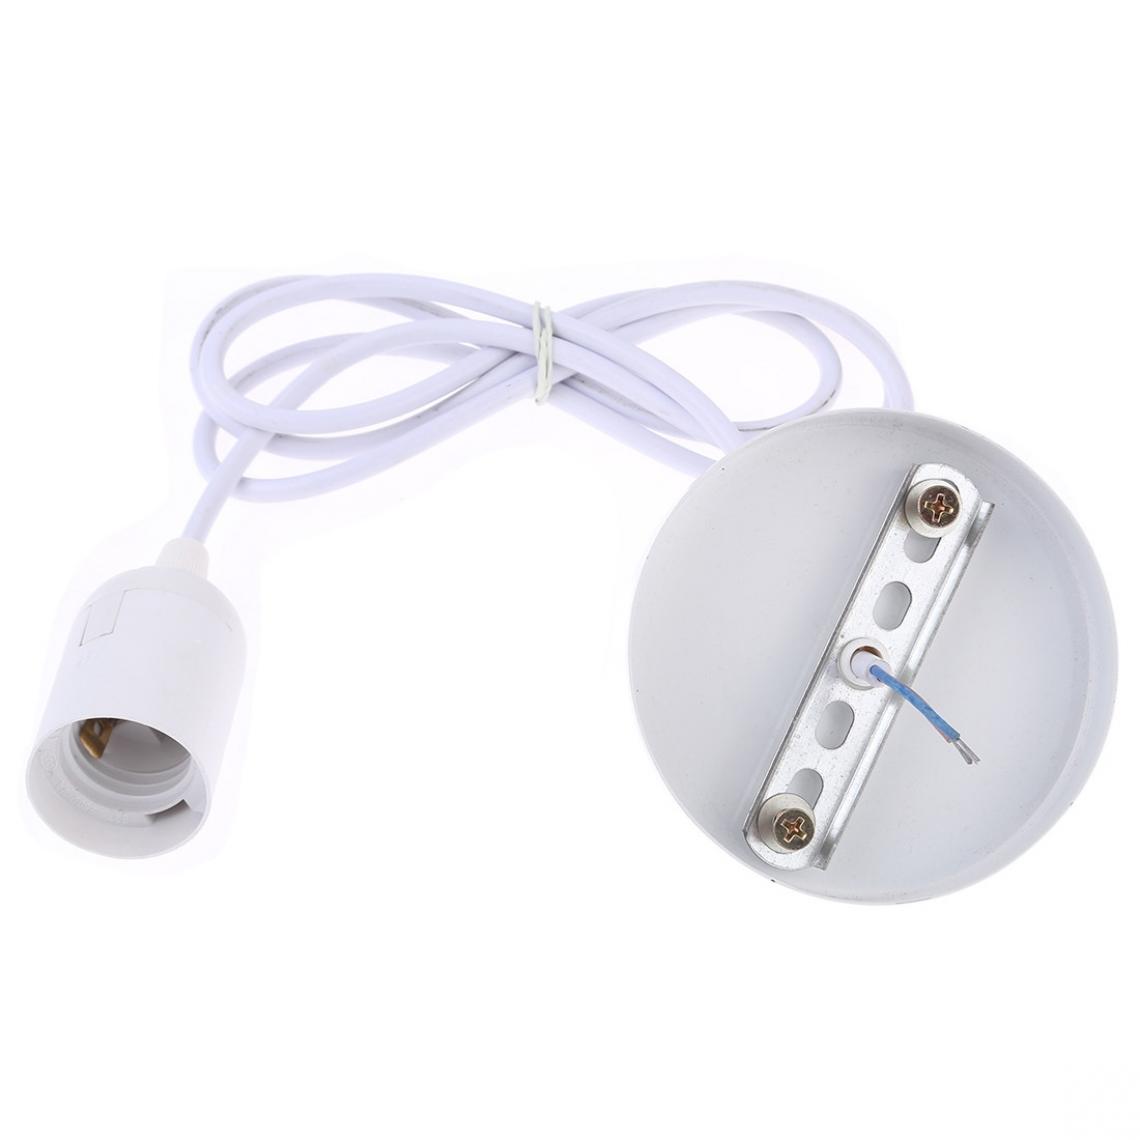 Wewoo - E27 Support de lampe DIY Plafonnier Lustre Ampoules Vis Base SocketLongueur du câble 1 m Blanc - Douilles électriques